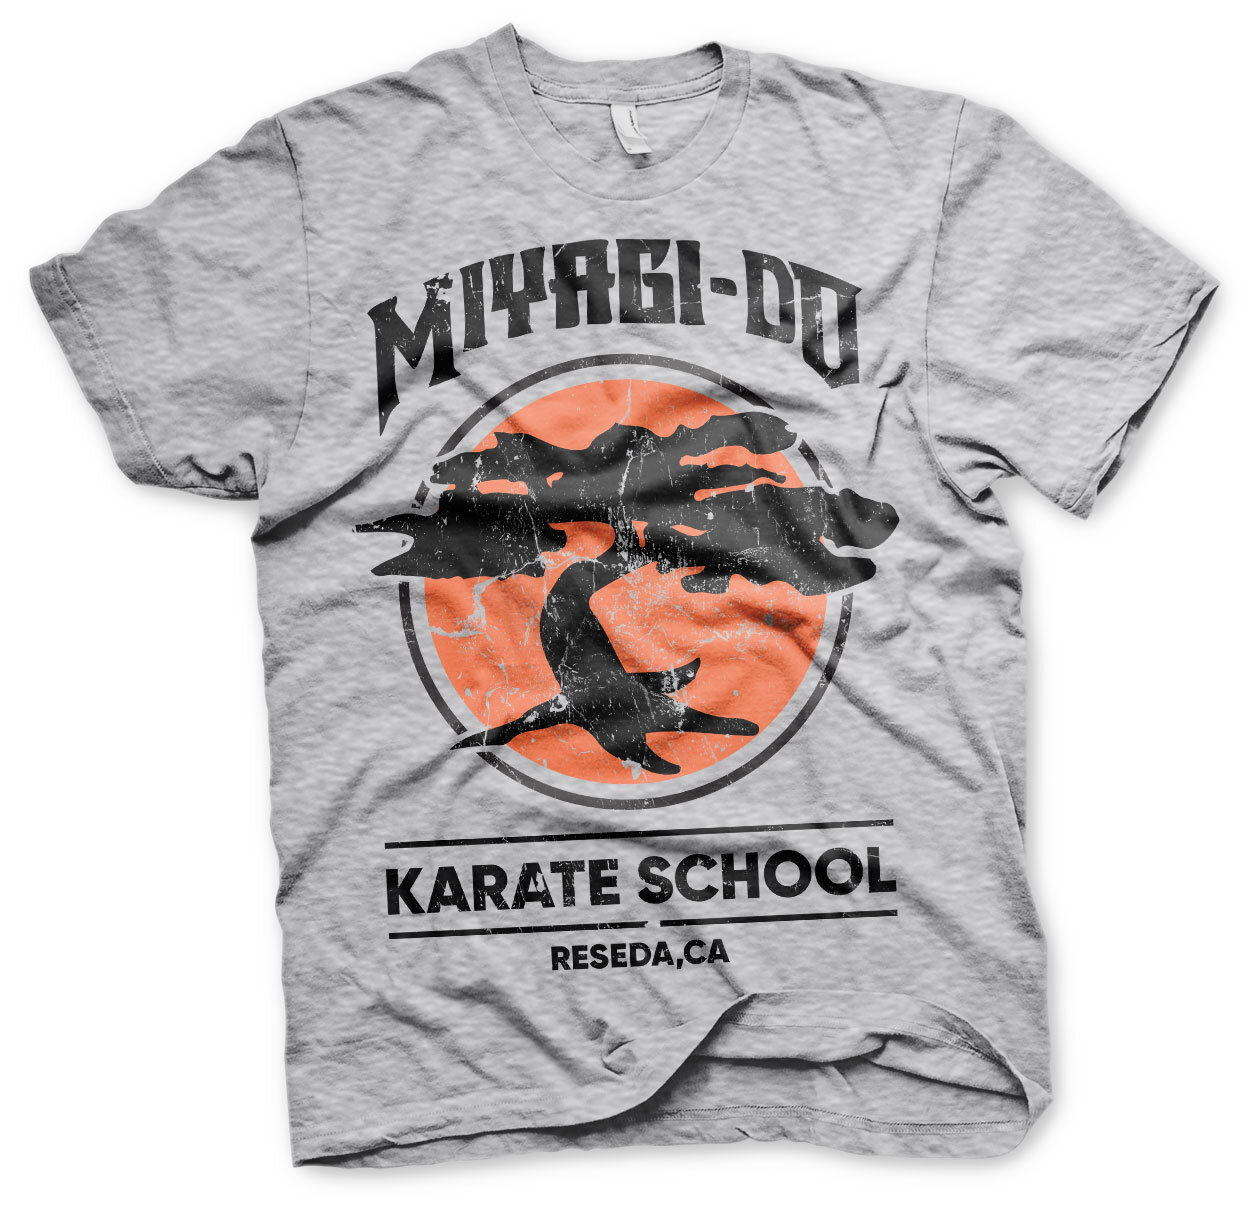 Miyagi-Do Karate School T-Shirt